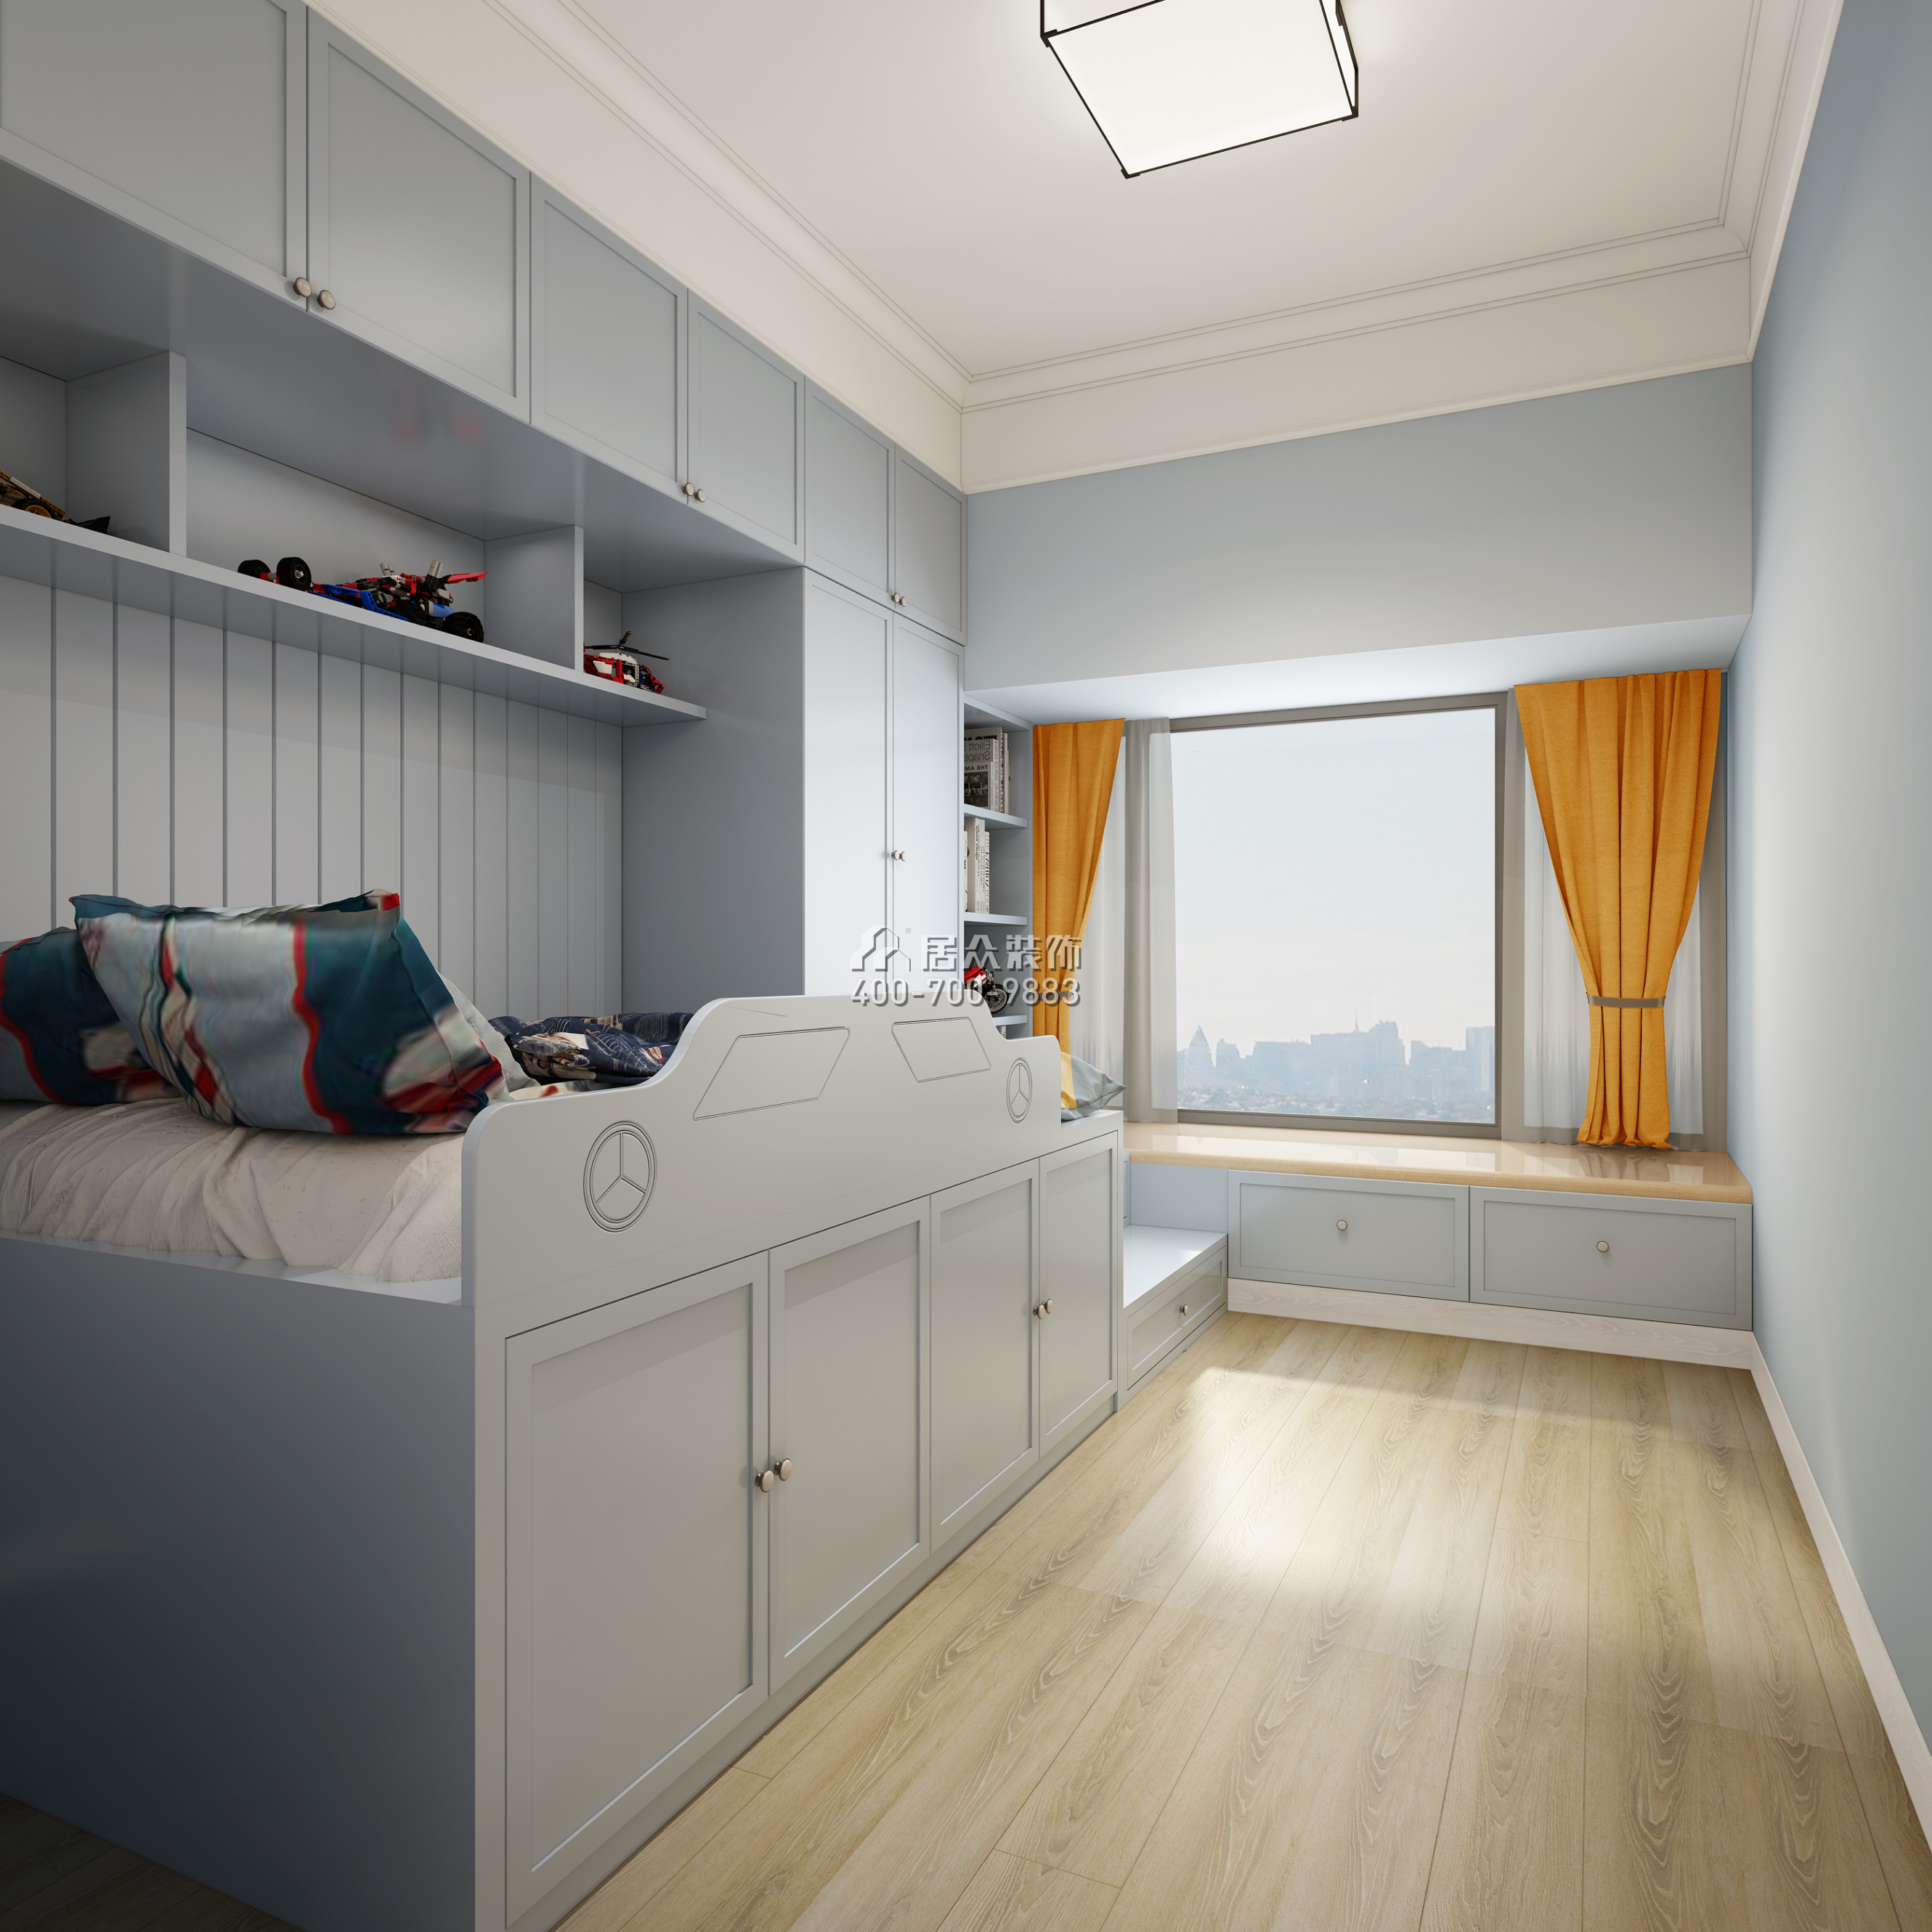 华润城润府160平方米中式风格平层户型卧室装修效果图